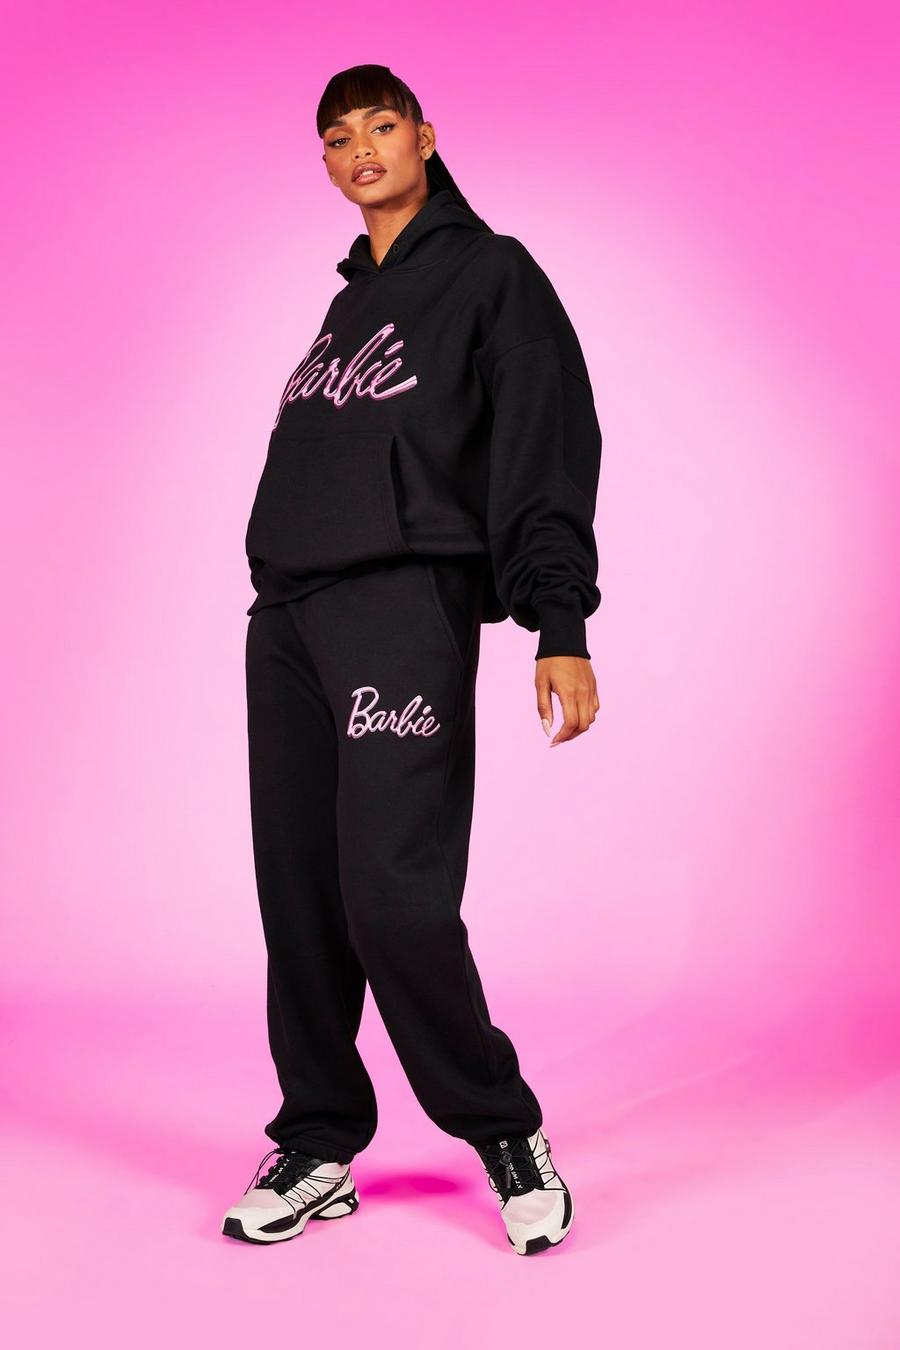 Pantaloni tuta oversize con stampa di slogan Barbie, Black nero